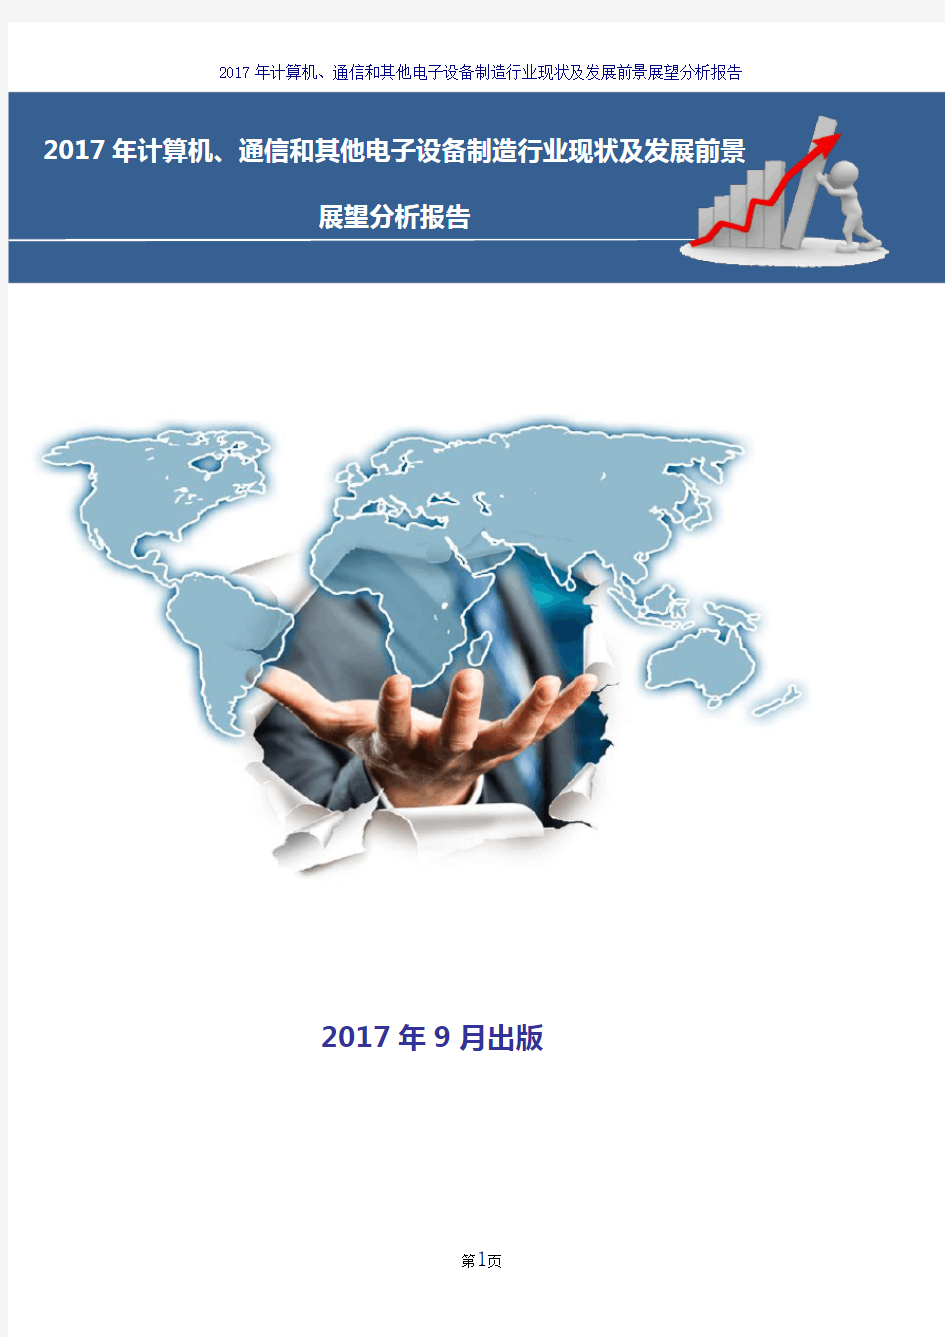 2017-2018年计算机、通信和其他电子设备制造行业现状及发展前景展望分析报告